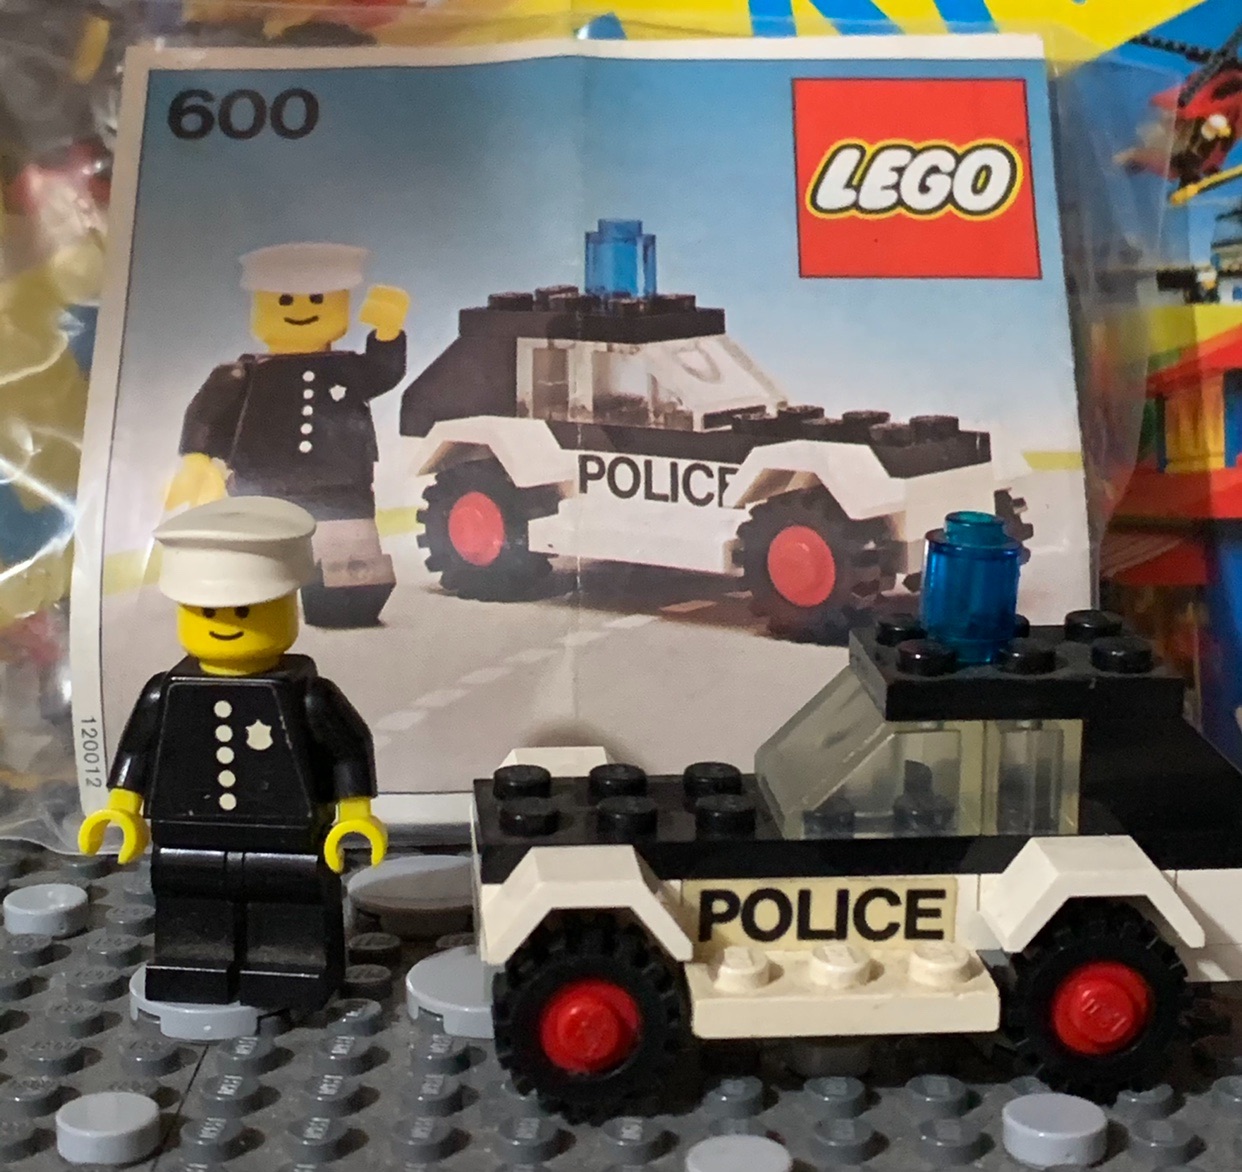 Lego 乐高玩具 警车（2） police car（2）--- 追捕逃犯_哔哩哔哩 (゜-゜)つロ 干杯~-bilibili